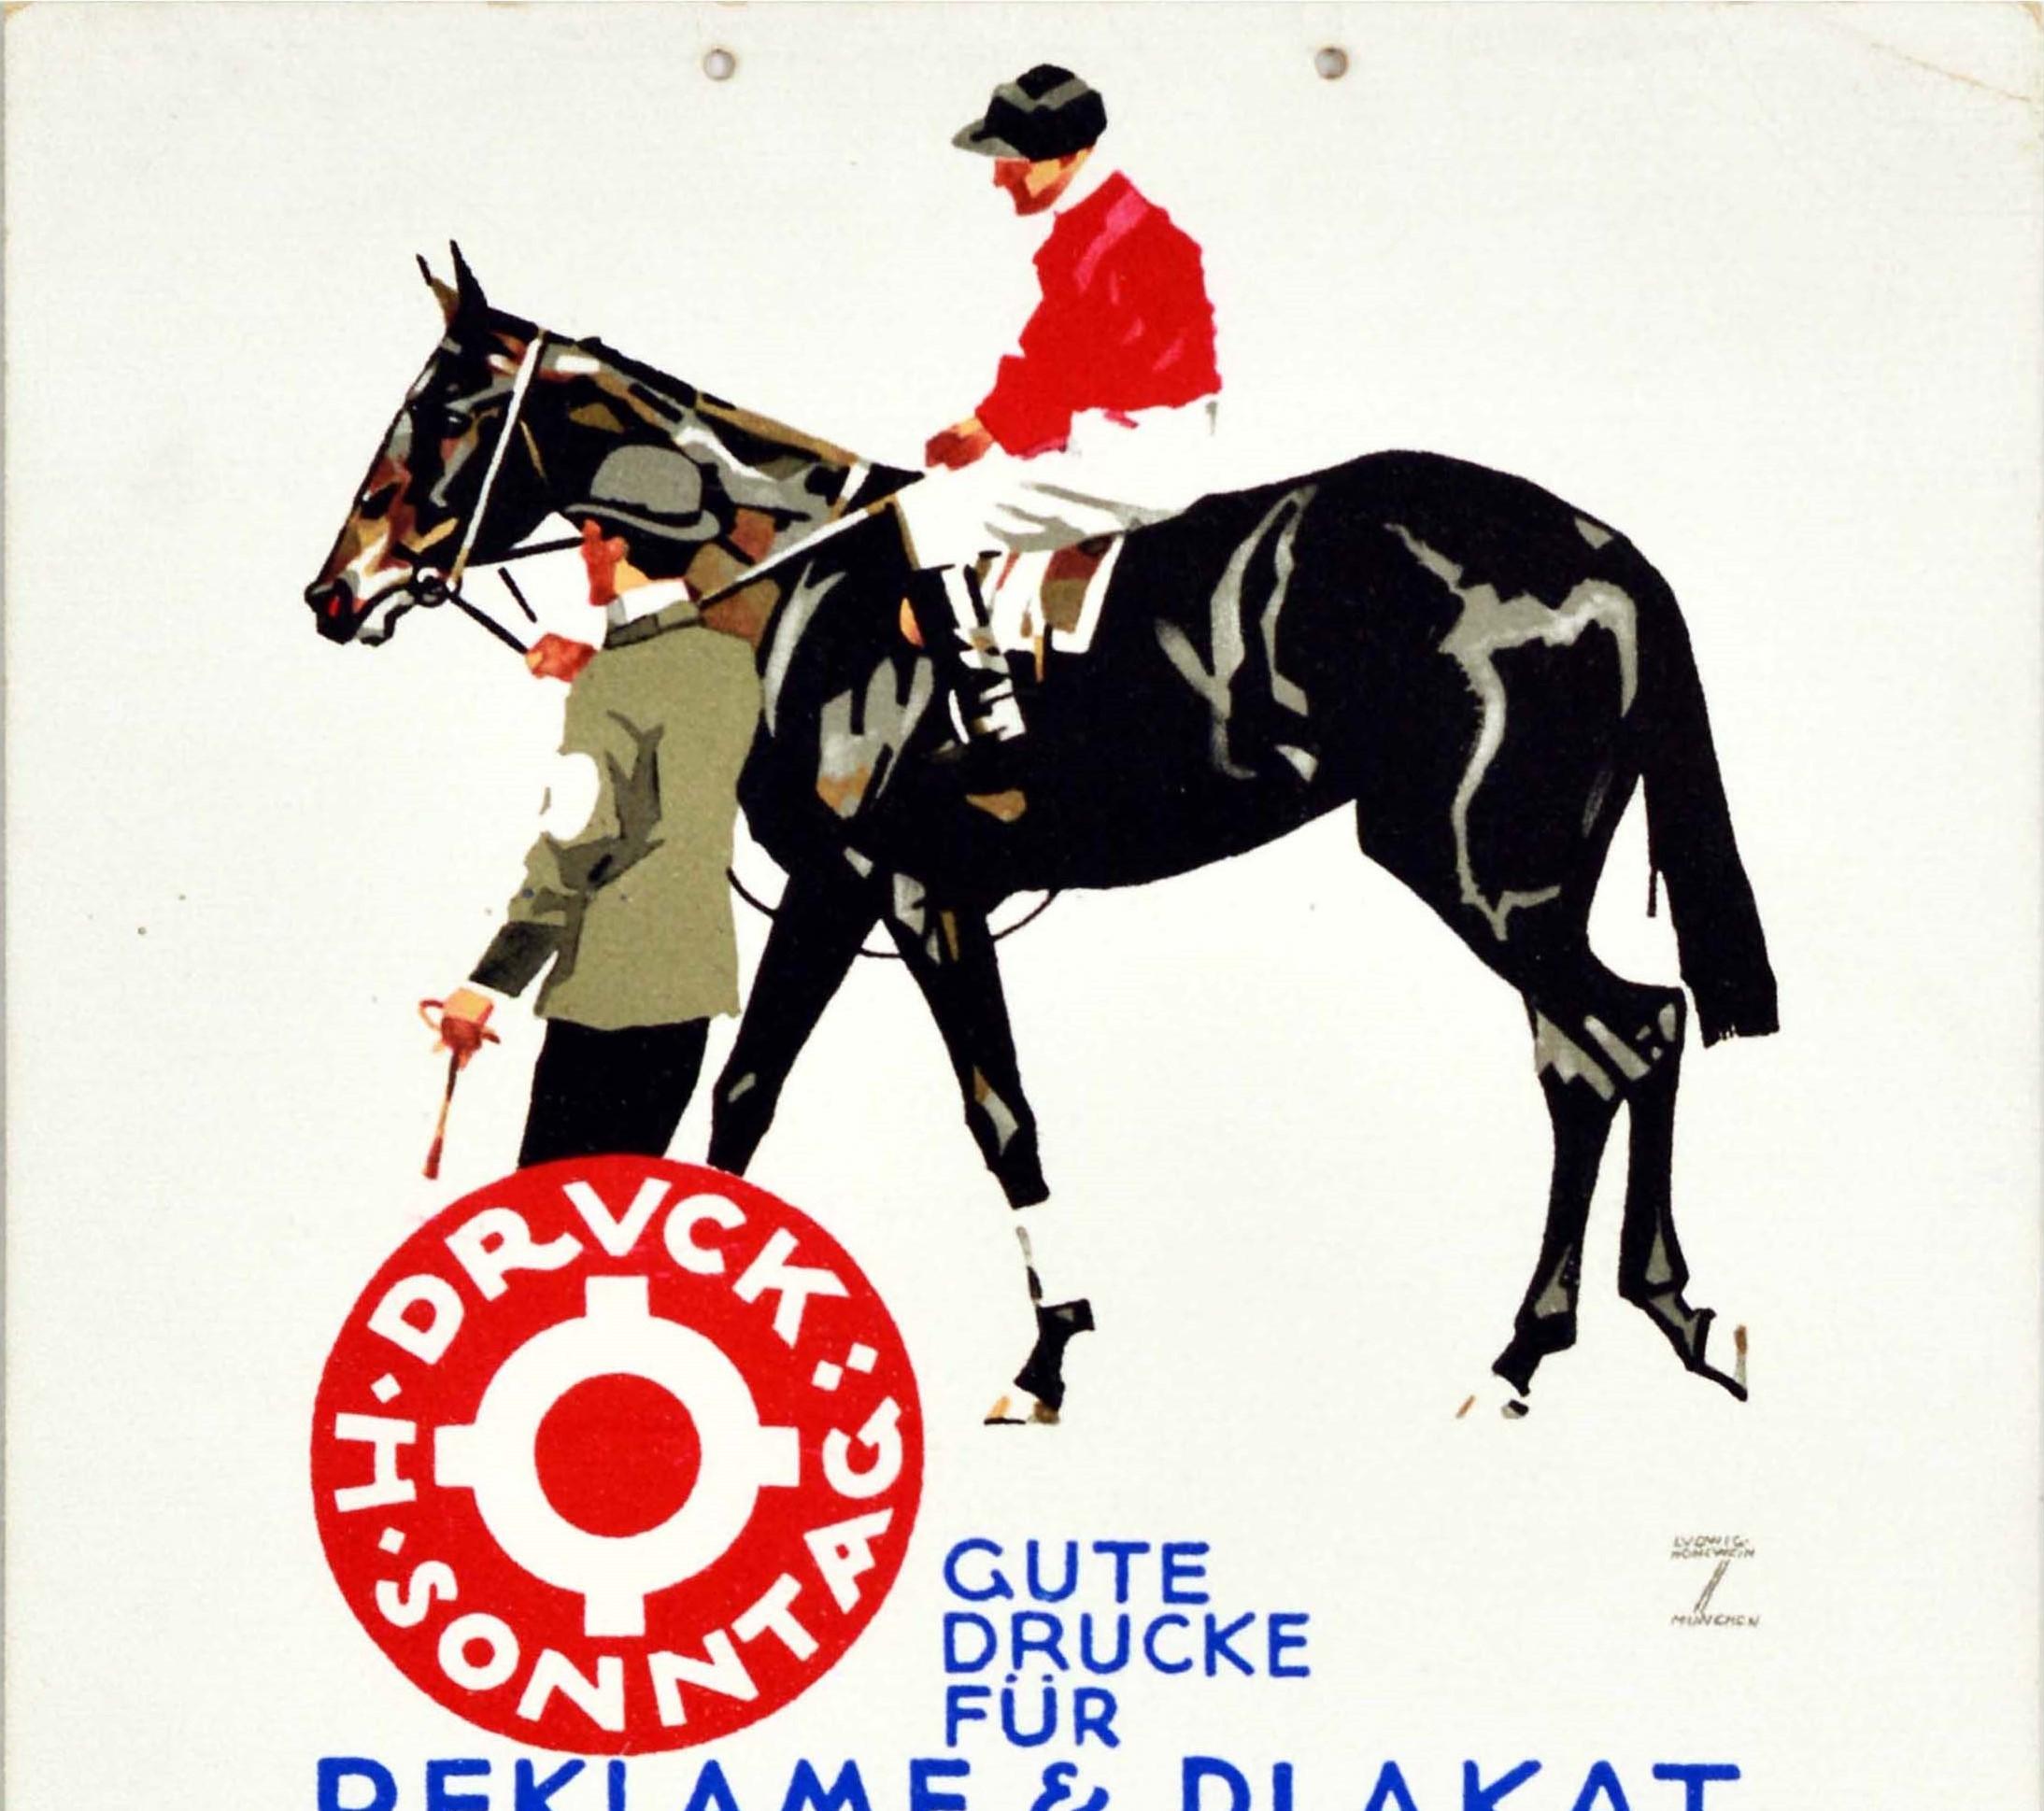 Affiche publicitaire originale d'époque présentant une œuvre du célèbre affichiste allemand Ludwig Hohlwein (1874-1949) pour l'imprimerie H. Sonntag Druck, représentant un cavalier vêtu d'une élégante tenue de jockey rouge et blanche, conduit sur un